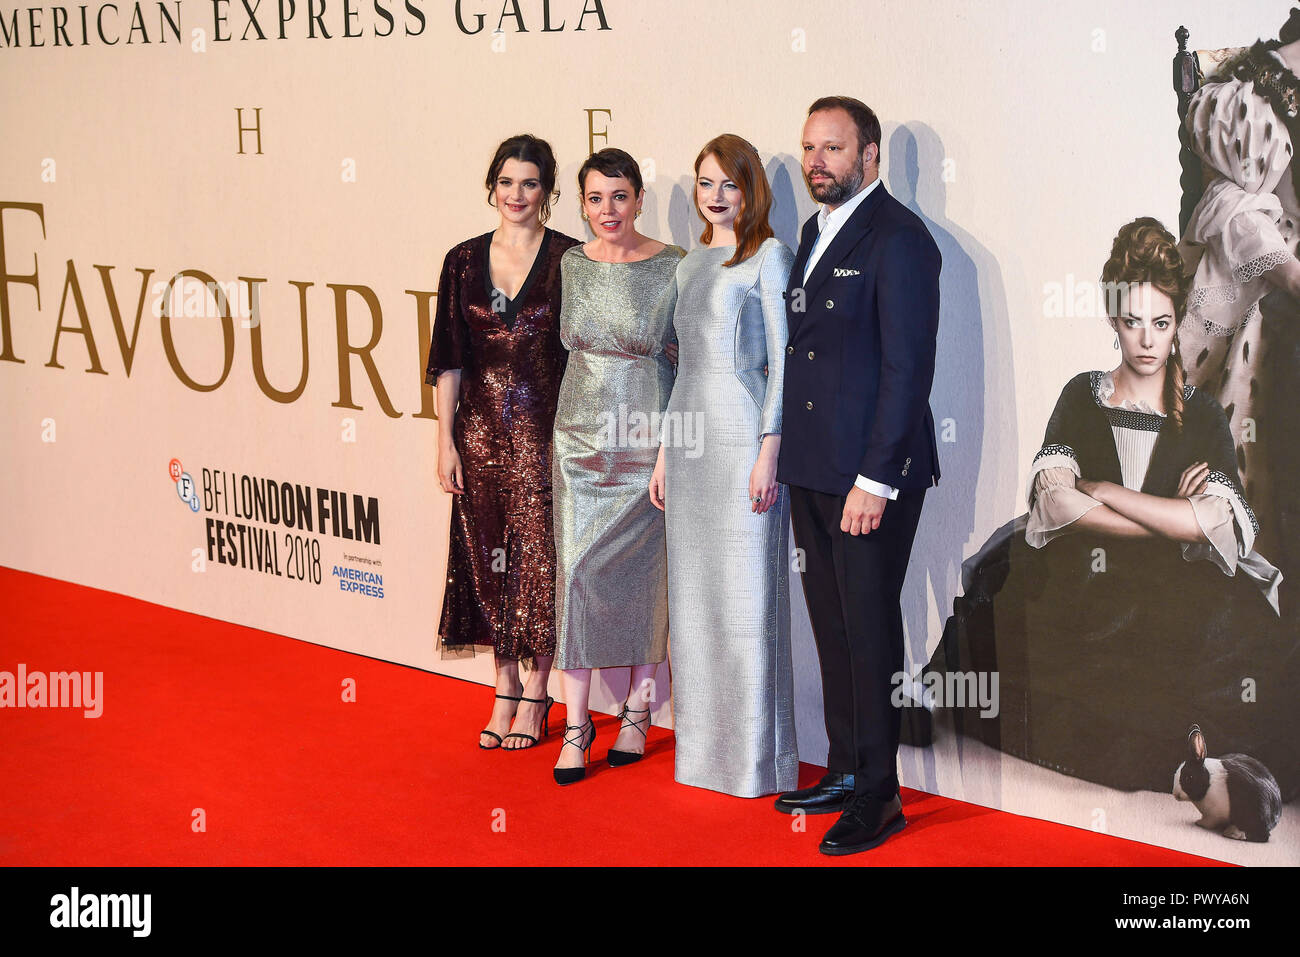 De izquierda a derecha) Rachel Weisz, Olivia Colman, Emma Stone y Yorgos  Lanthimos asistir al estreno británico de 'La Favorita' & American Express  en la 62ª Gala BFI London Film Festival Fotografía